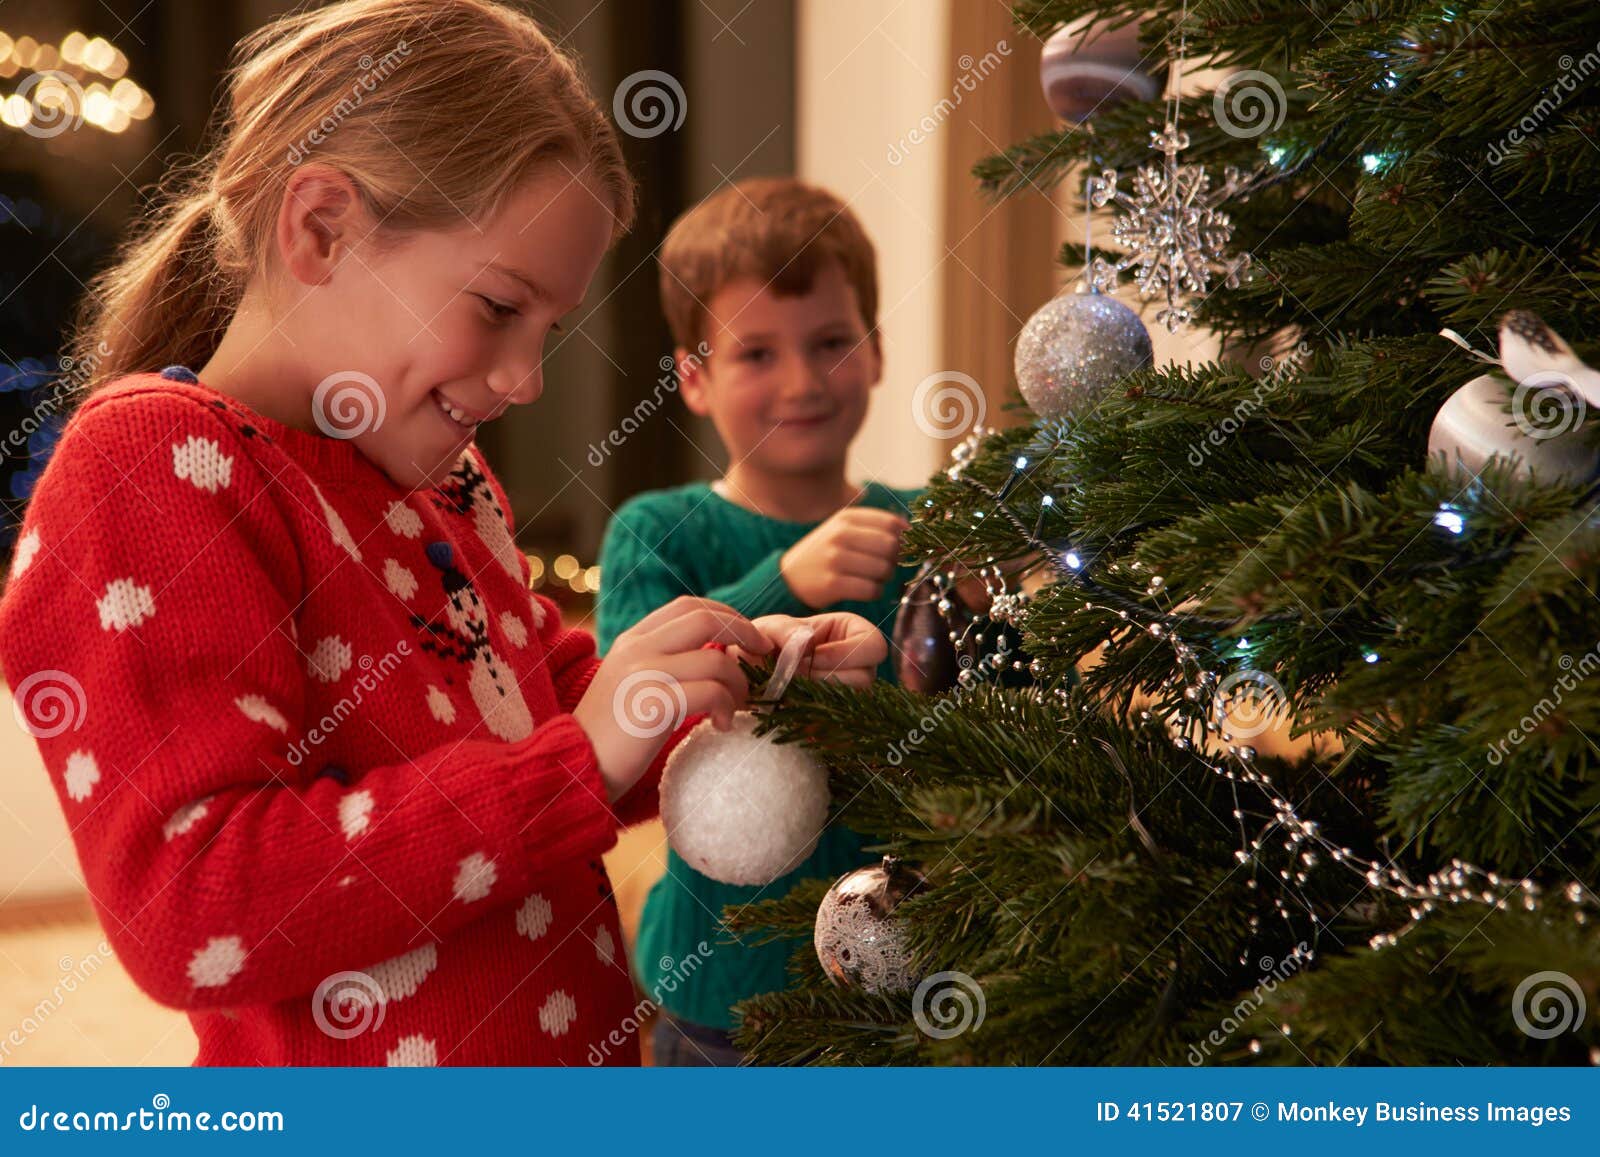 Immagini Natale Qumran.Bambini Che Decorano L Albero Di Natale A Casa Immagine Stock Immagine Di Sorridere Avendo 41521807